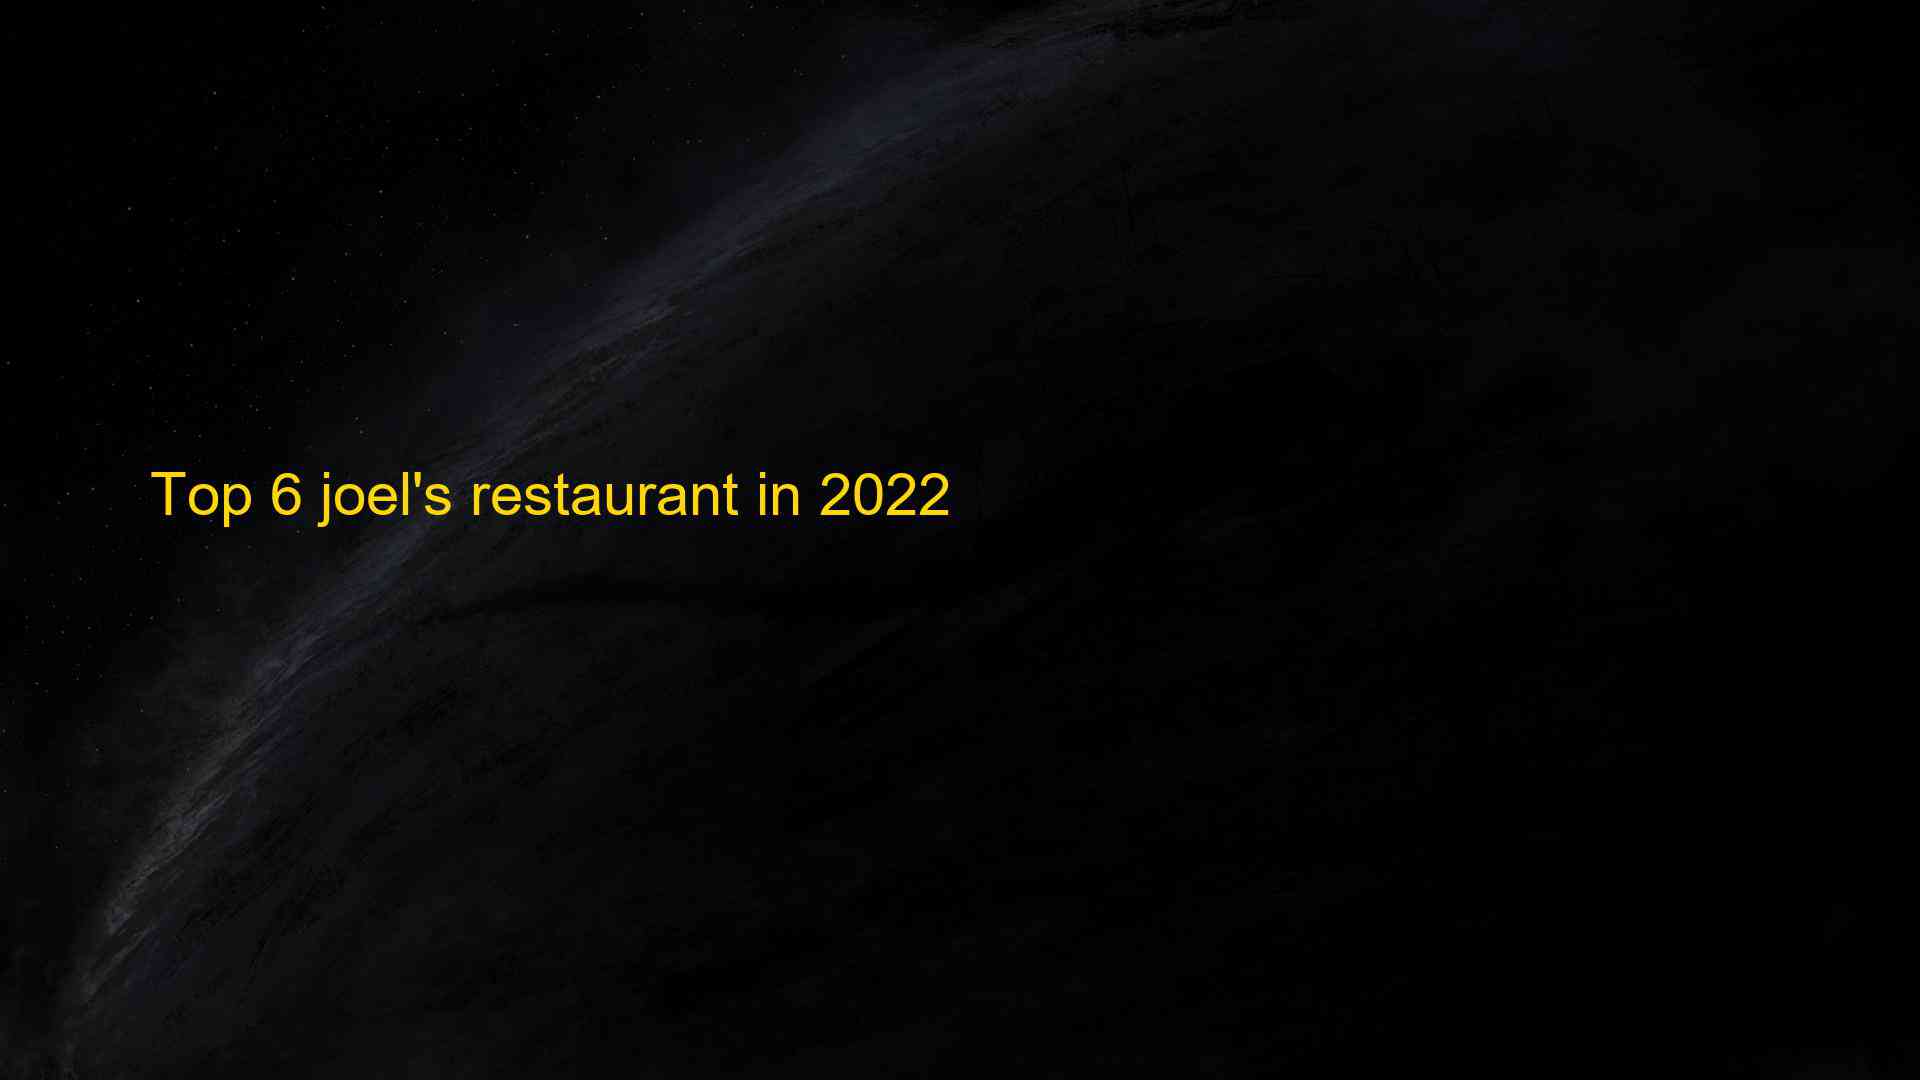 Top 6 joels restaurant in 2022 1663408173